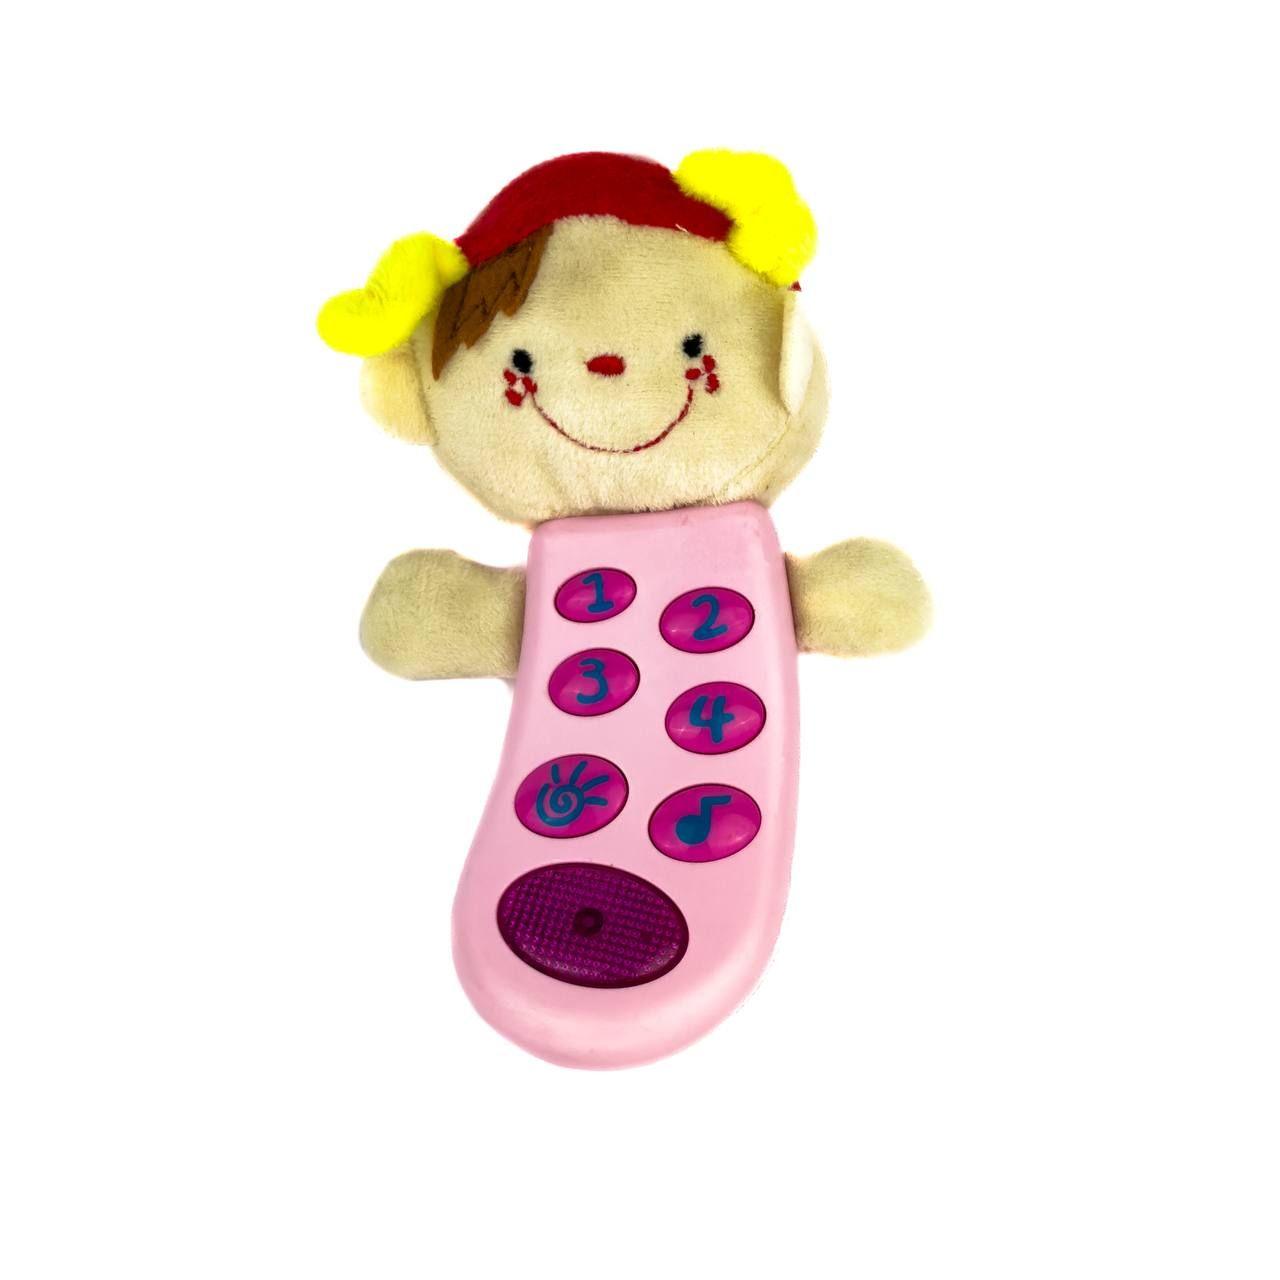 Інтерактивна іграшка "Розумний телефон", JLD333-12B NEW